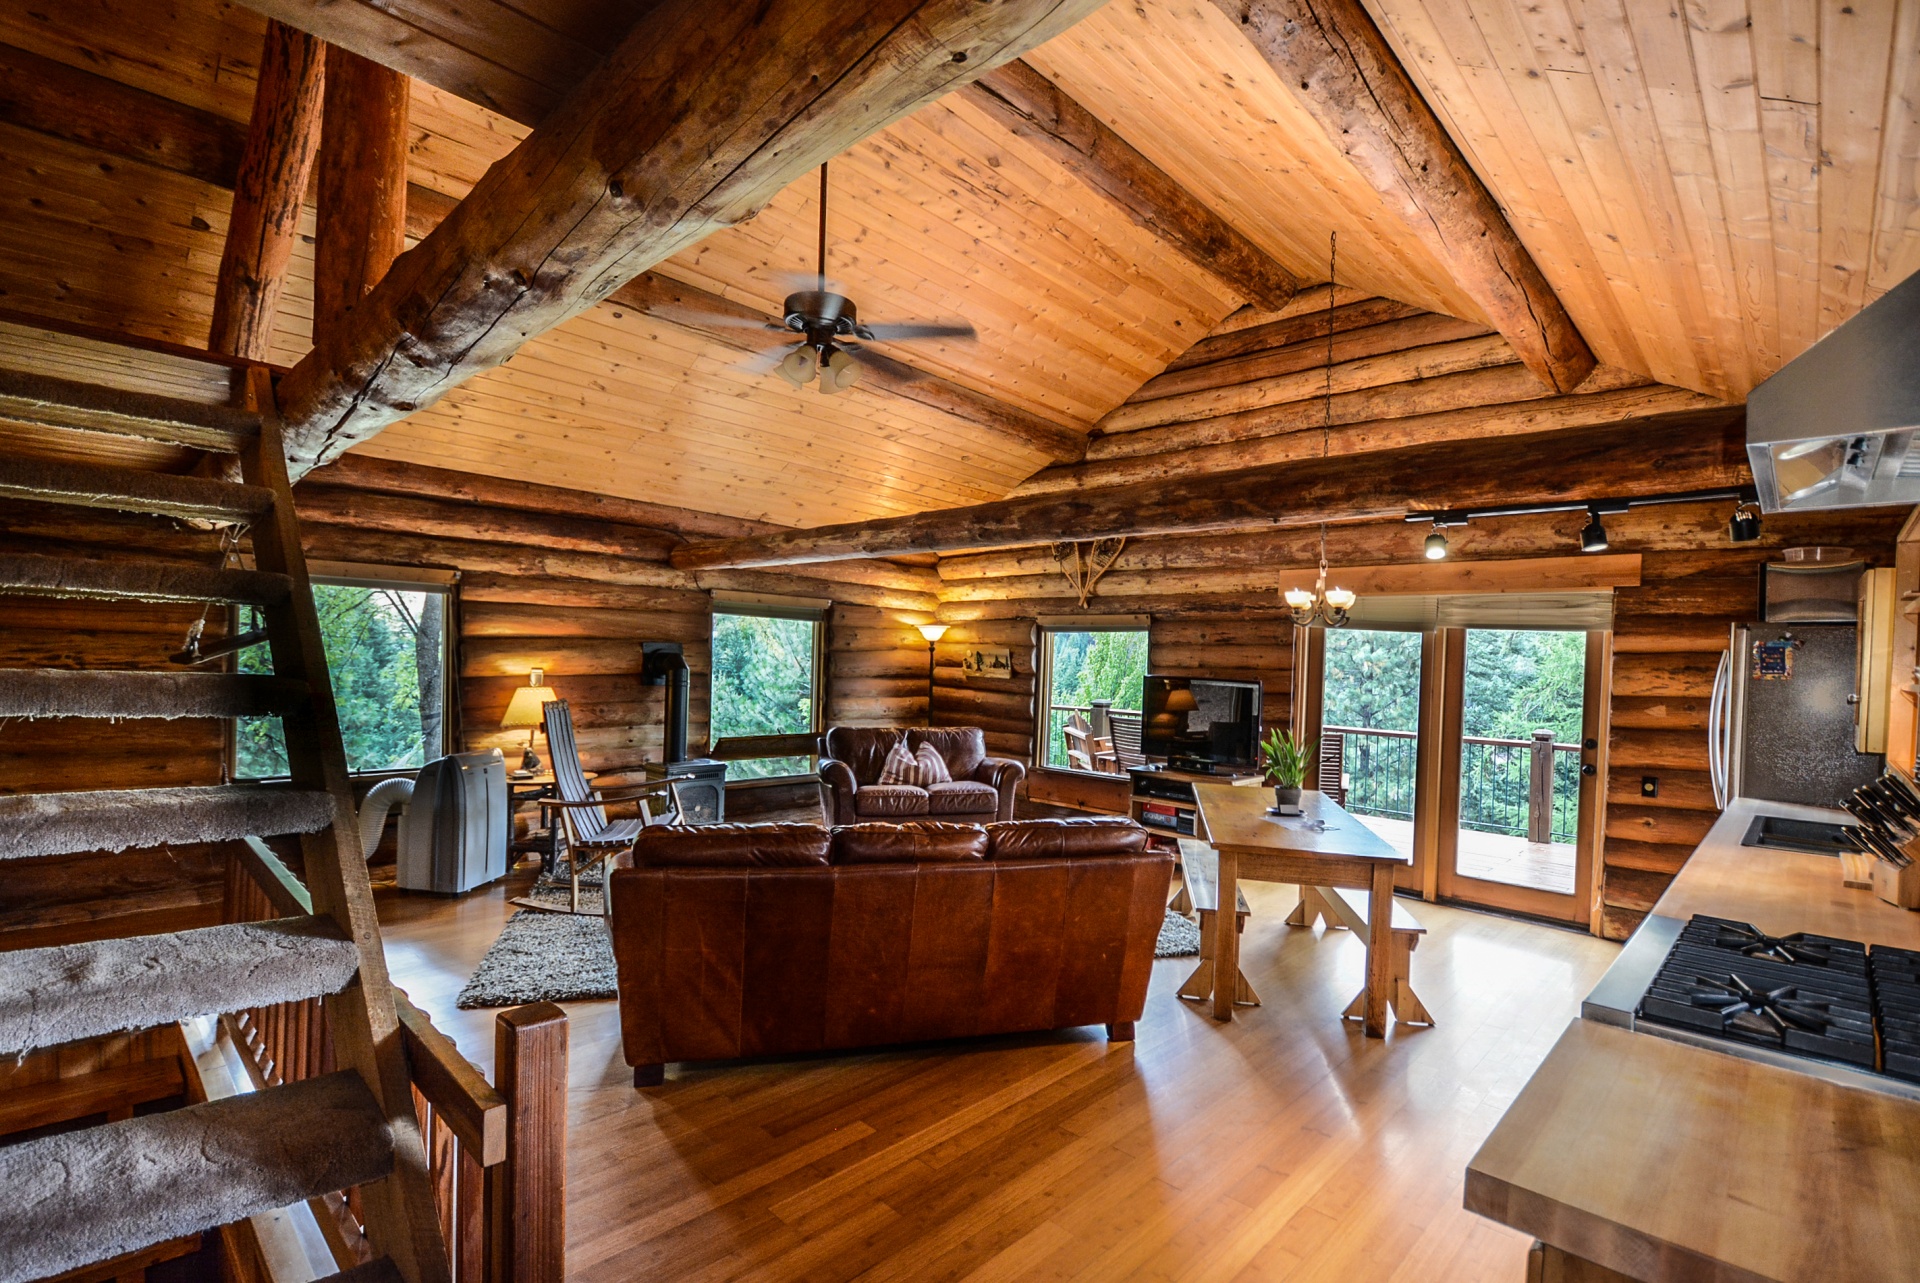 Interior of Log Home